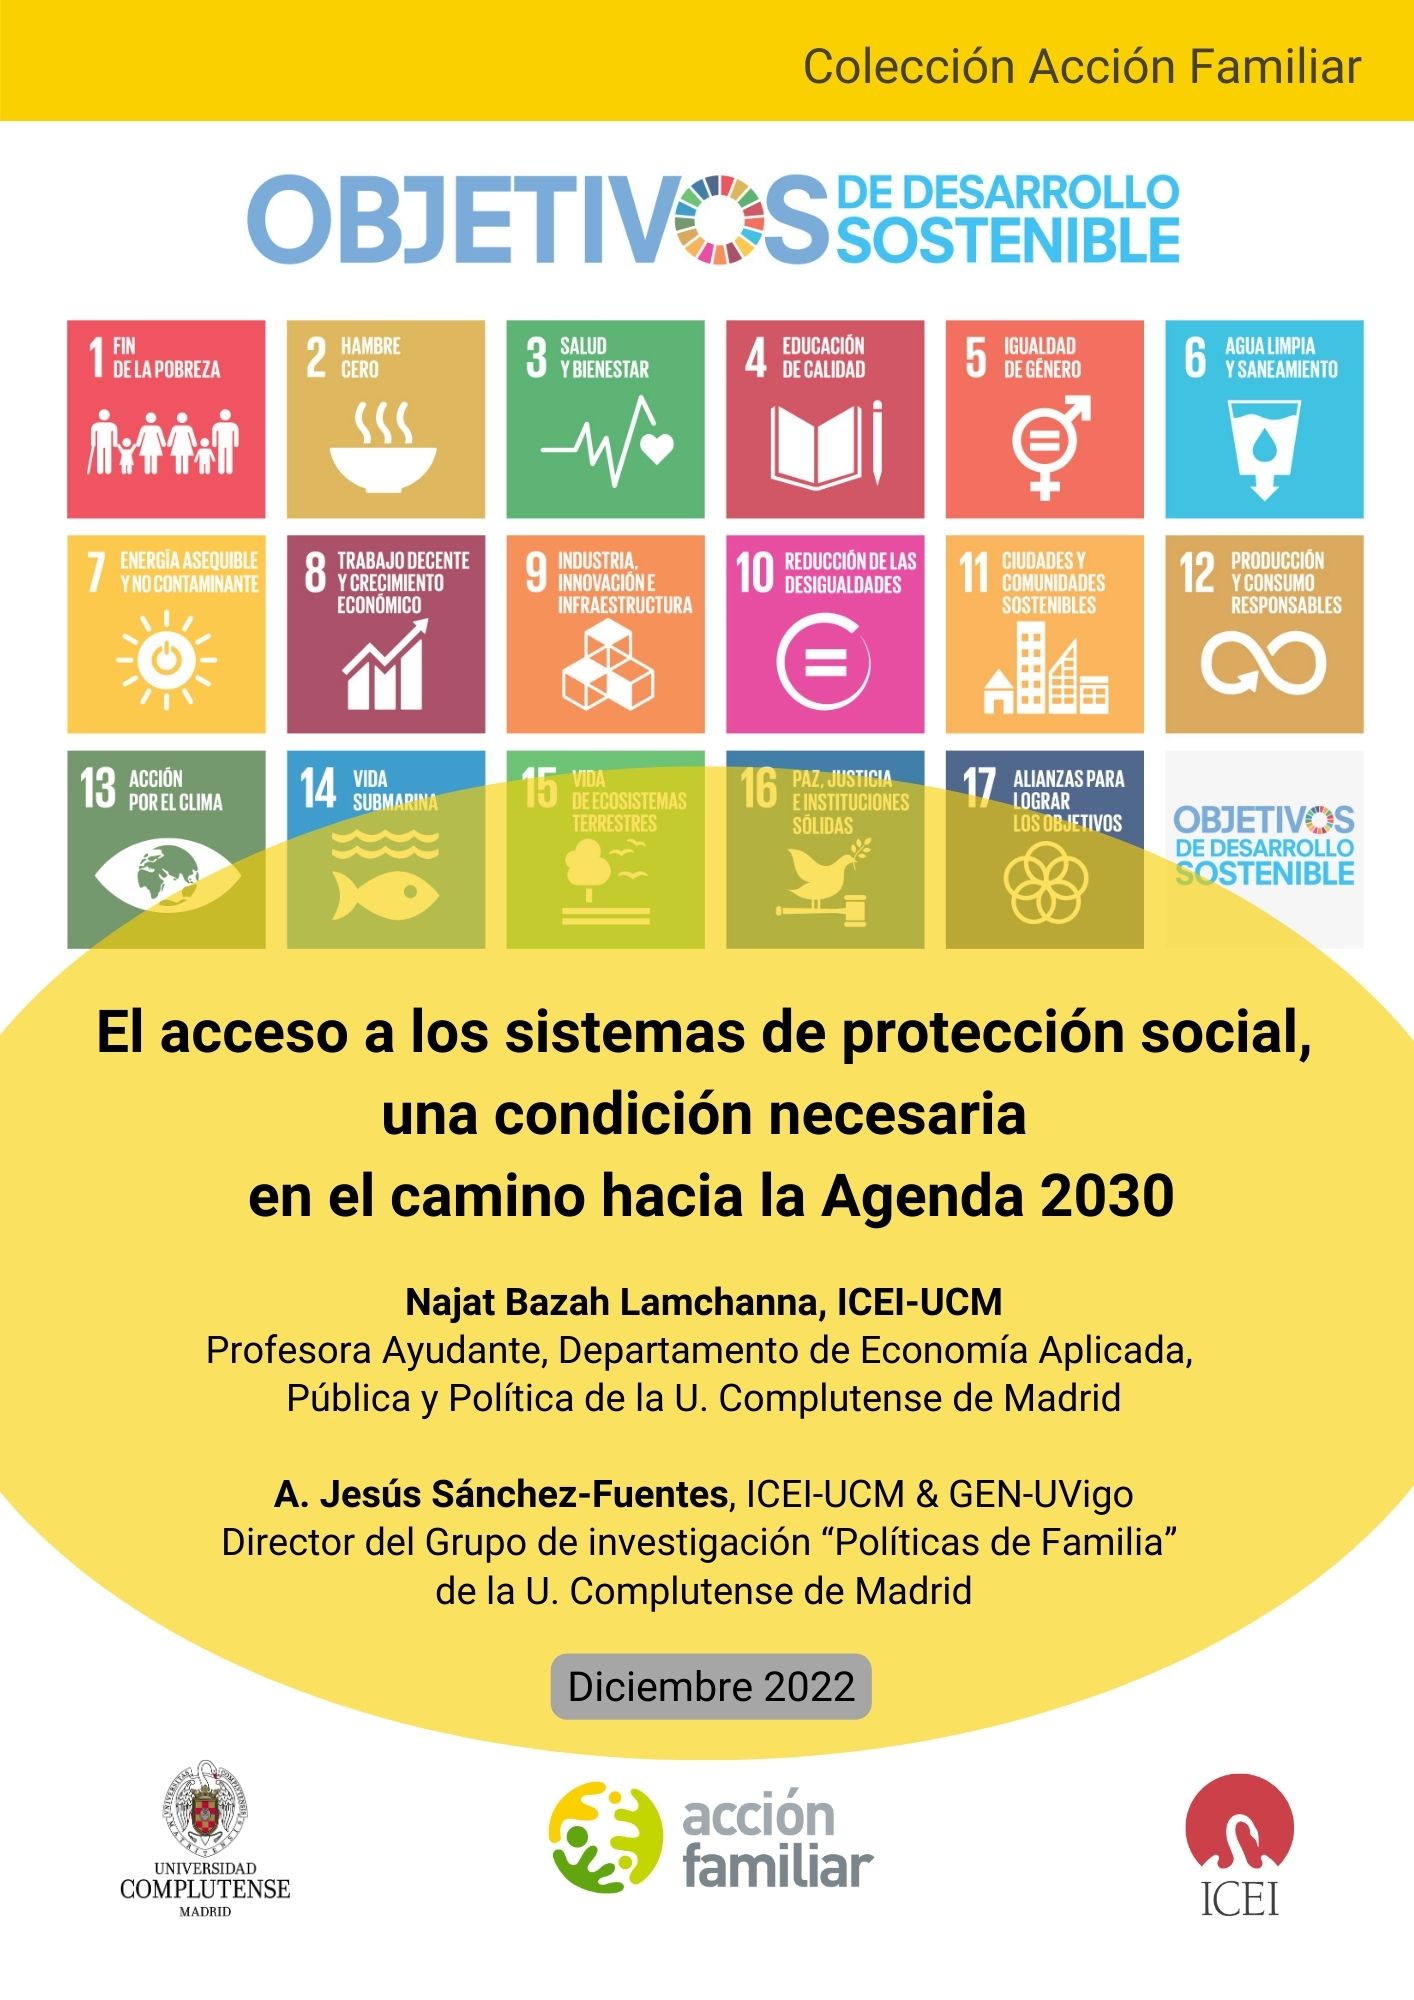 El acceso a los sistemas de protección social, una condición necesaria en el camino hacia la Agenda 2030